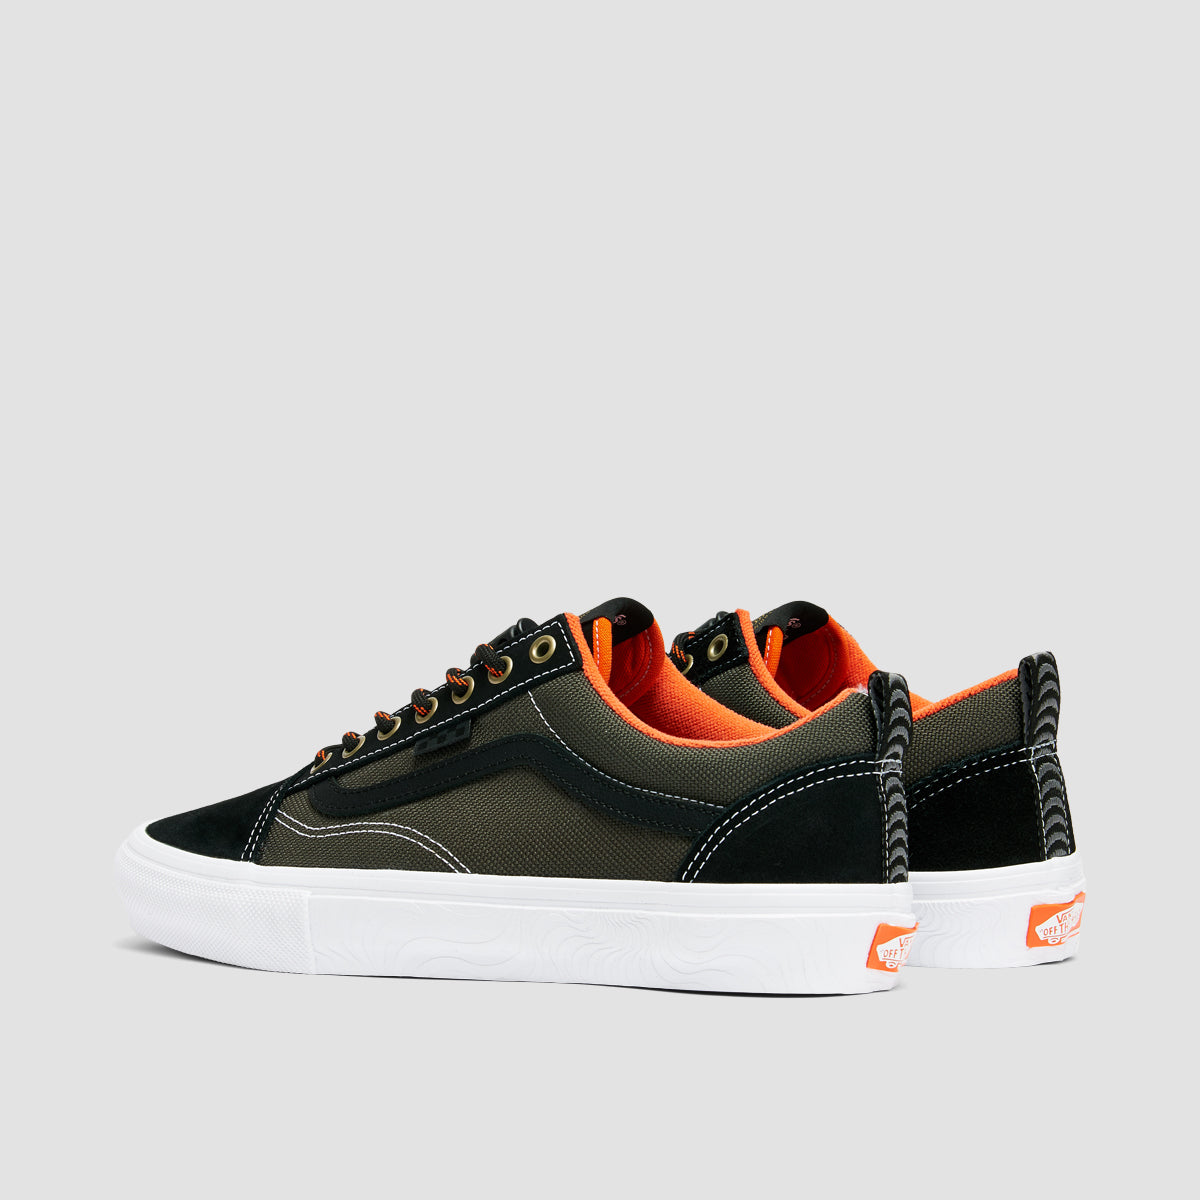 Vans Skate Old Skool Shoes - Spitfire Wheels Black/Flame